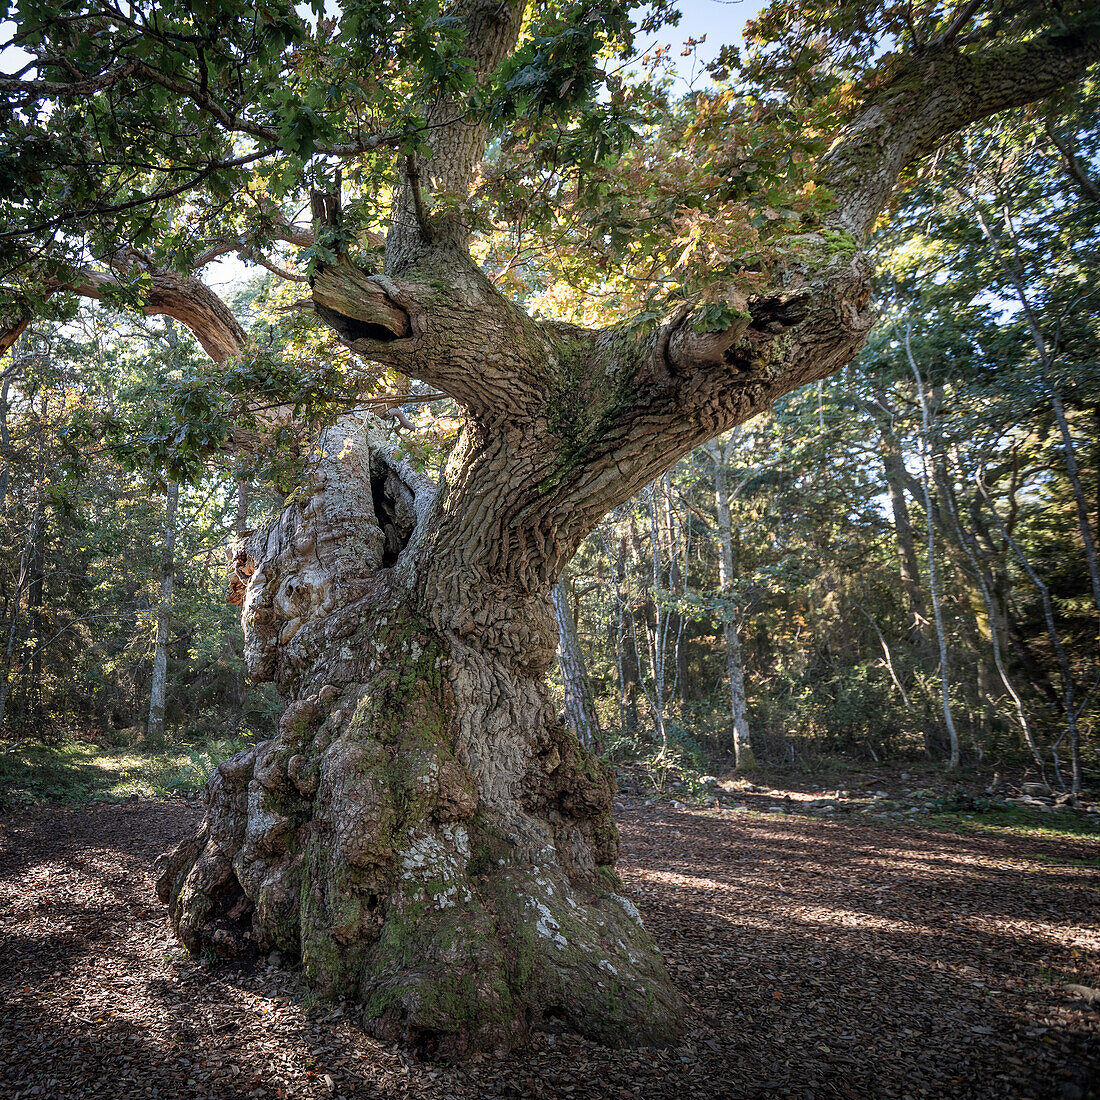 Ancient oak tree in the Trollskogen forest on the island of Öland in eastern Sweden